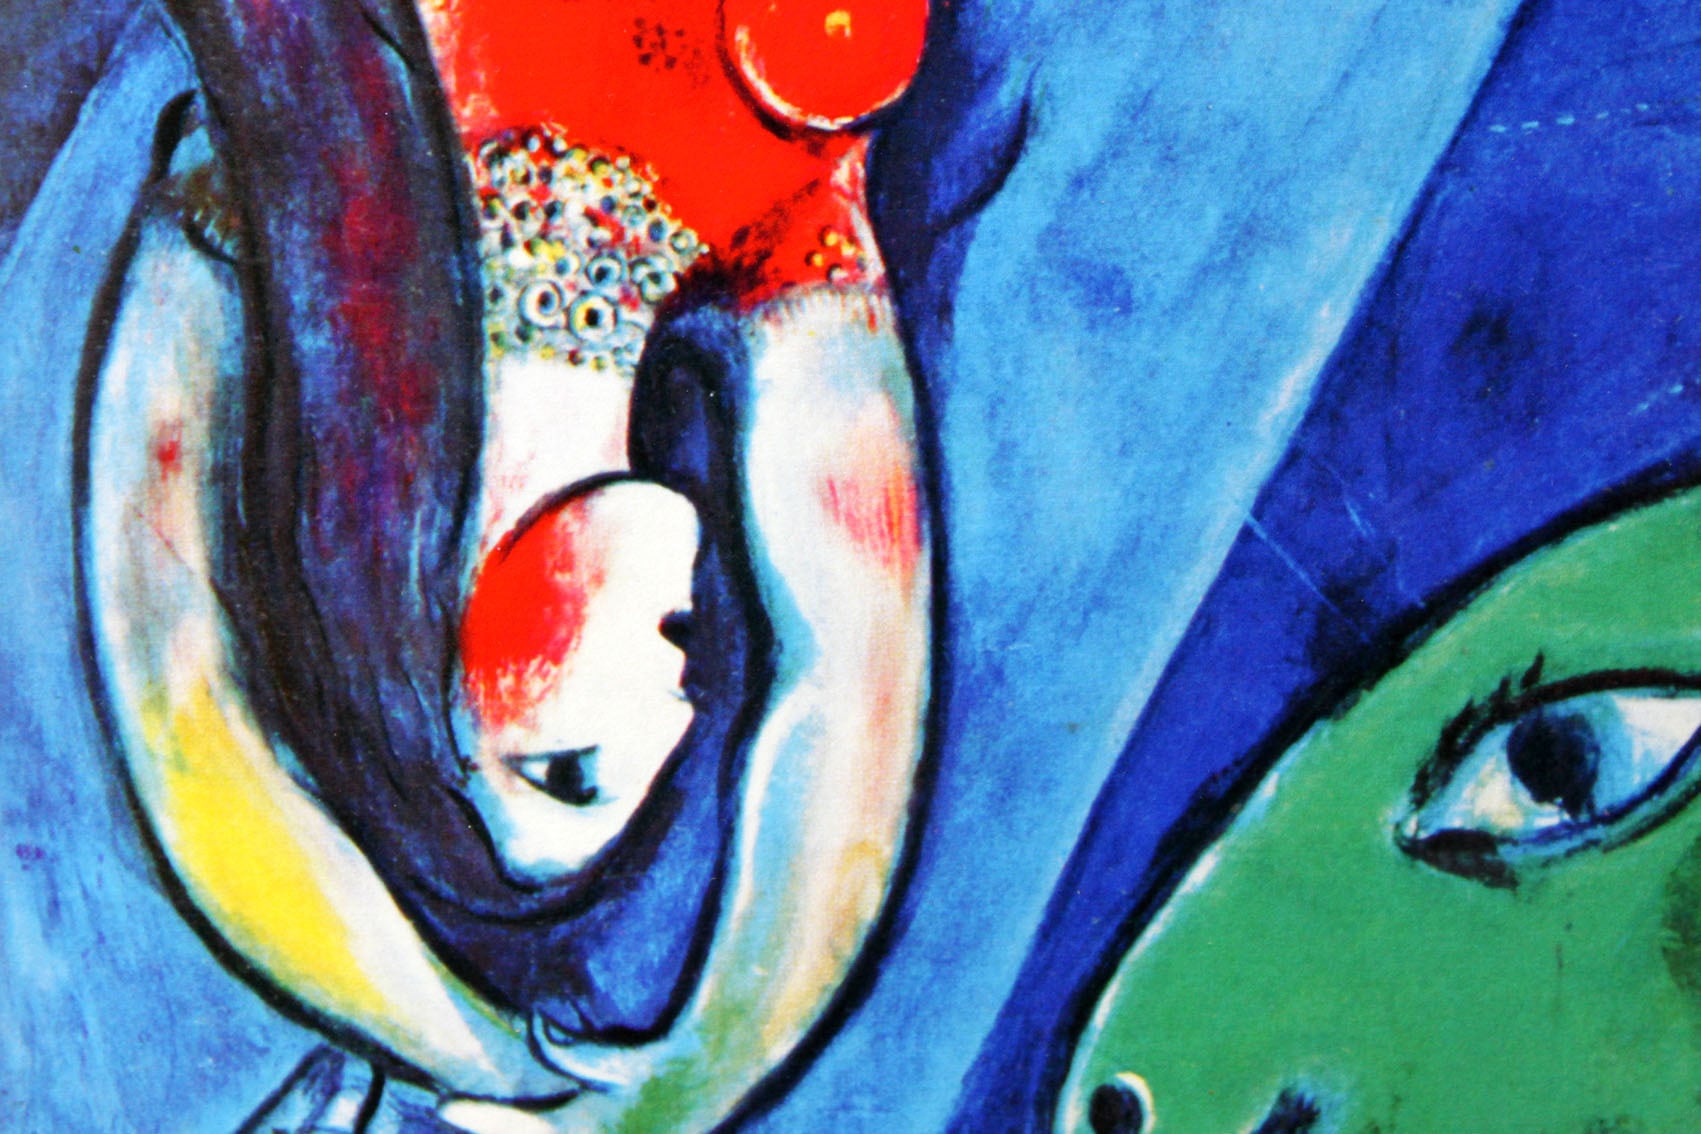 マルク・シャガール絵画「青いサーカス」作品証明書・展示用フック・限定375部エディション付複製画ジークレ